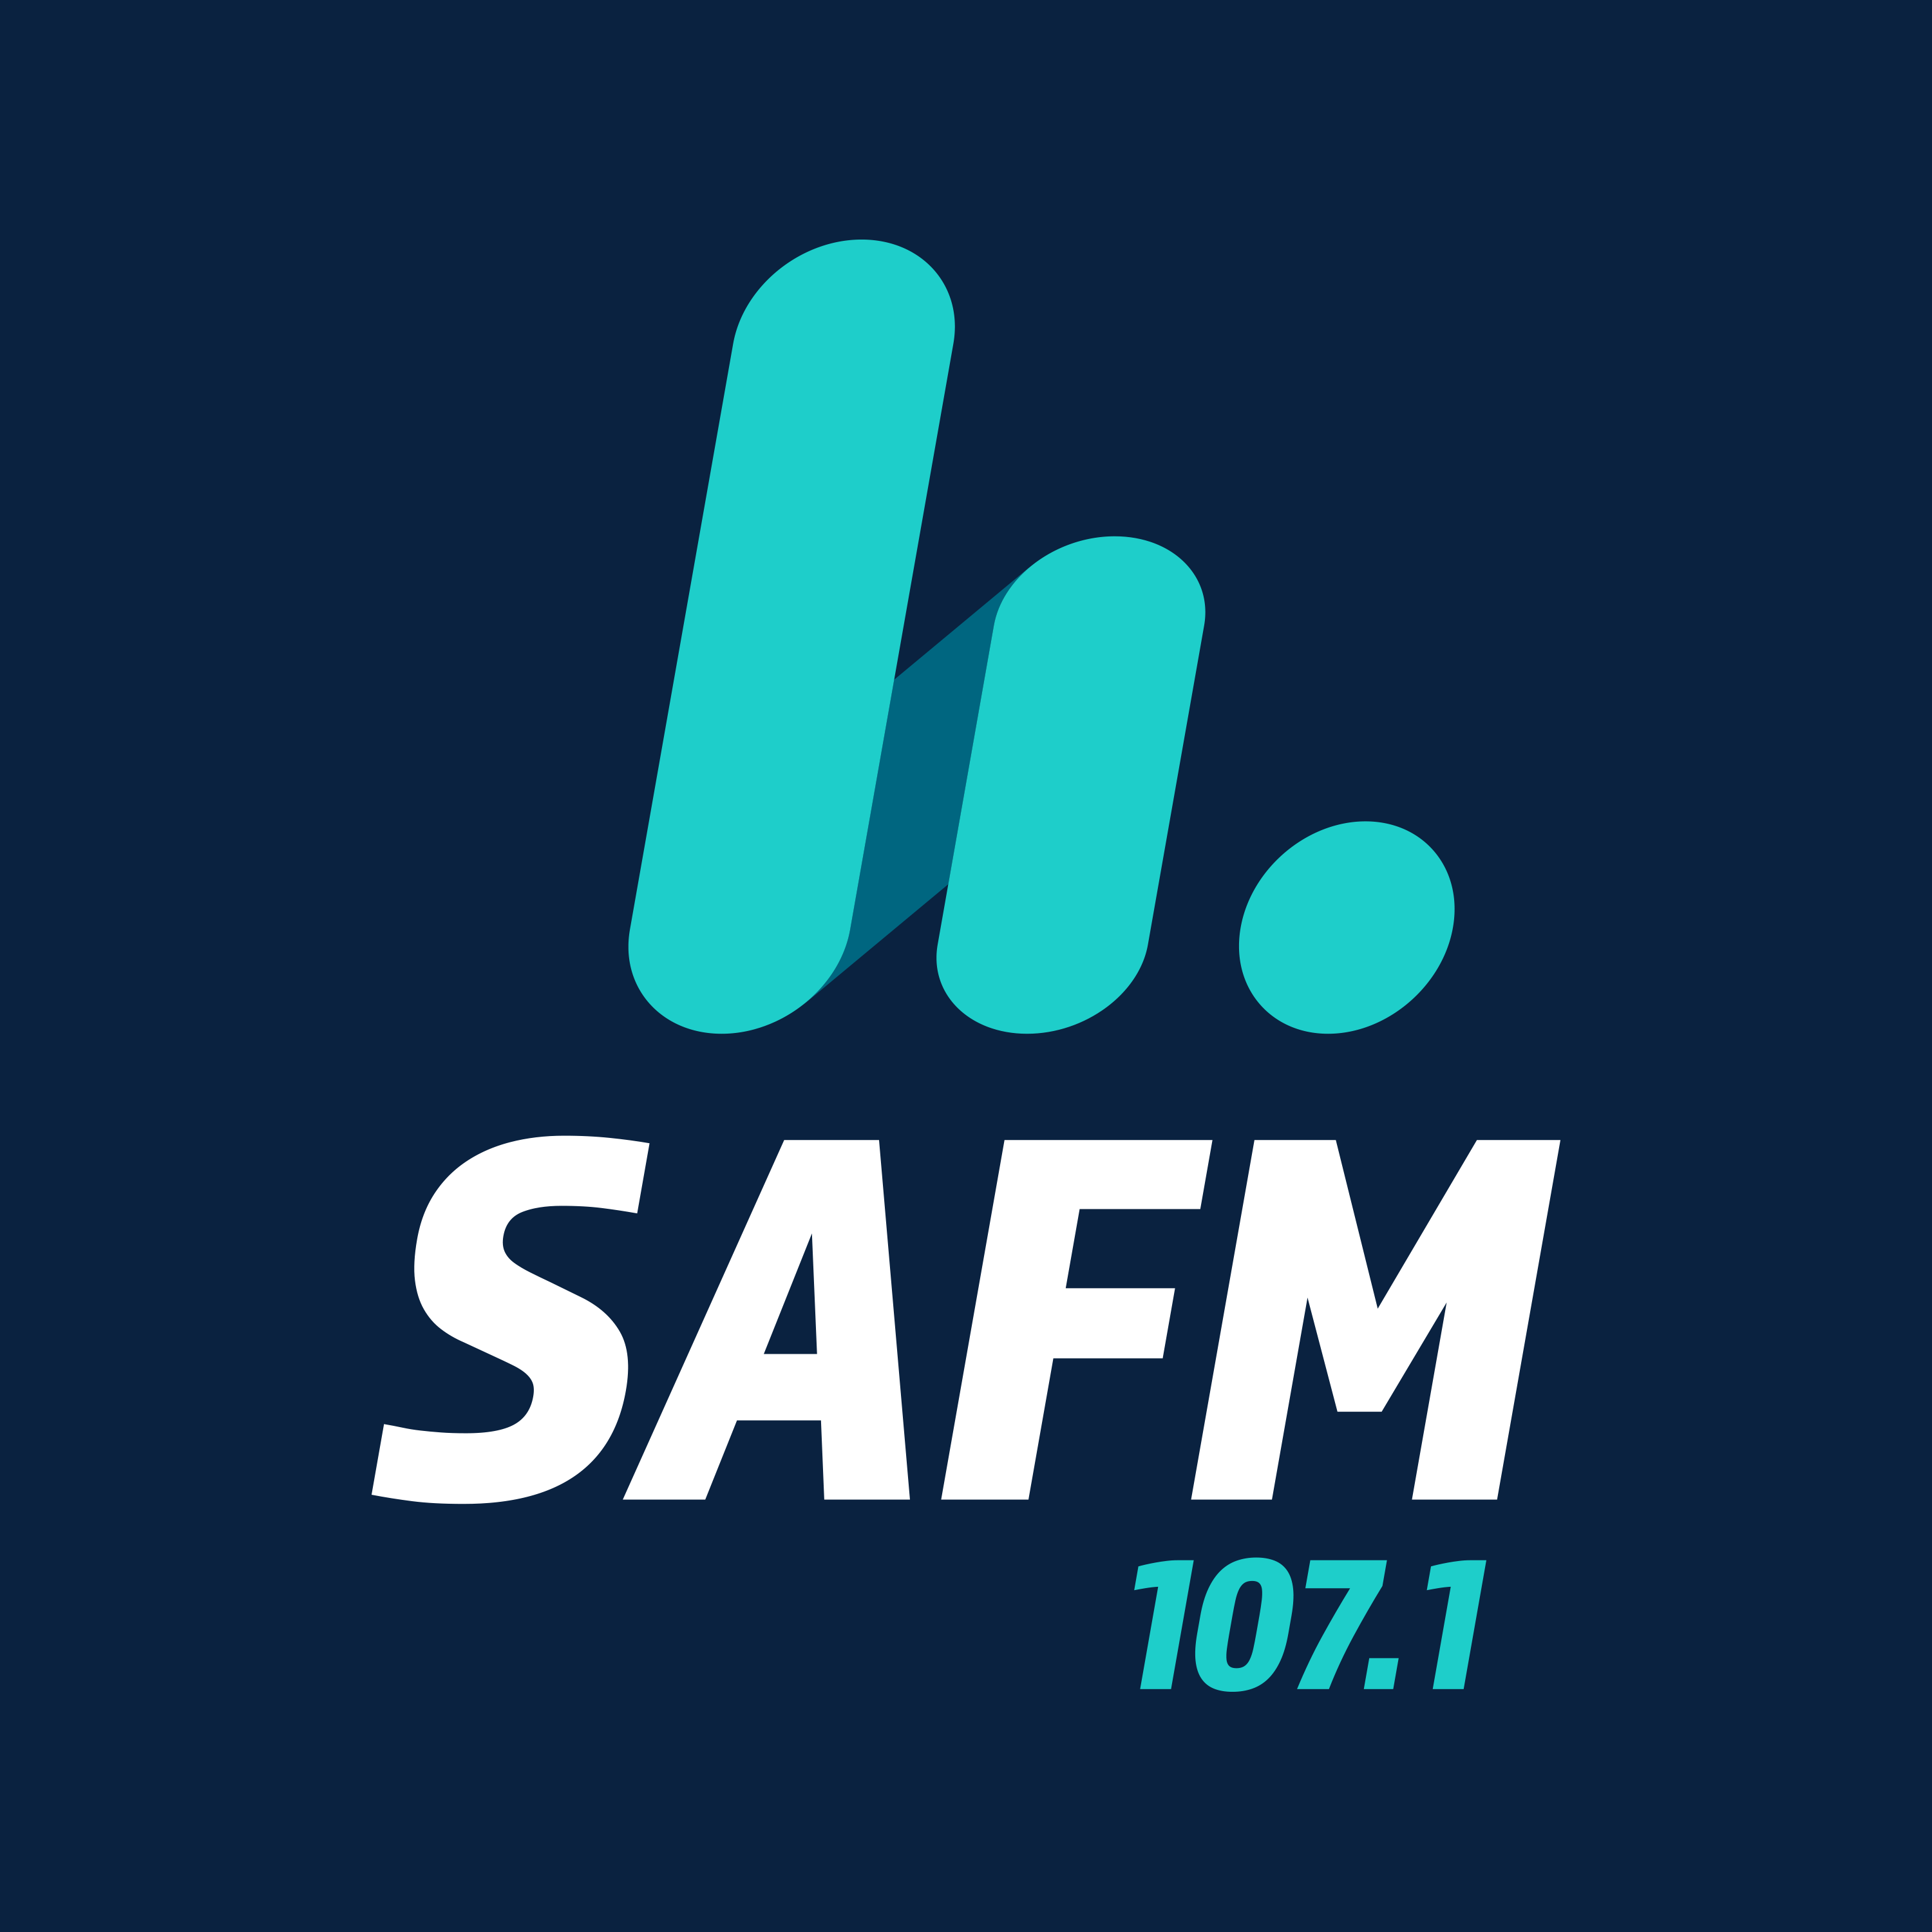 SAFM Adelaide logo